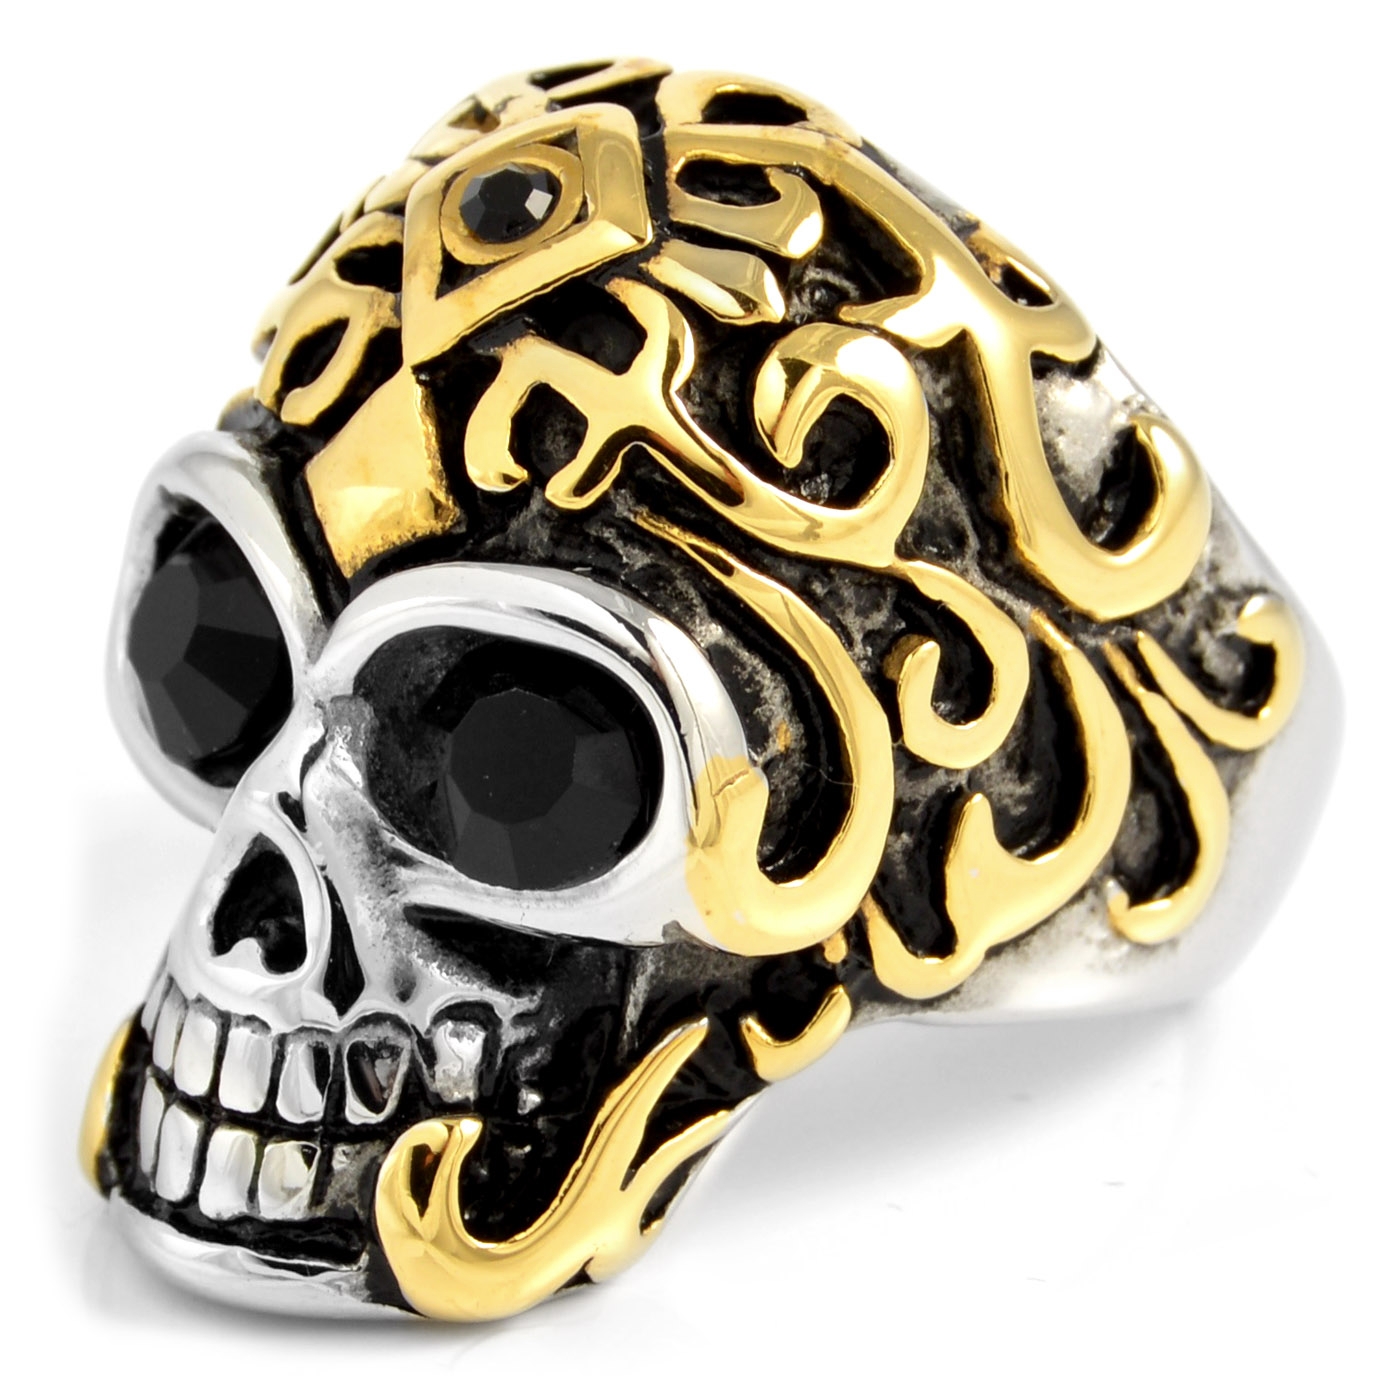 Stainless Steel Punk Biker Mens Gold Masonic Skull Ring For Men Size 7-15  Gift | eBay